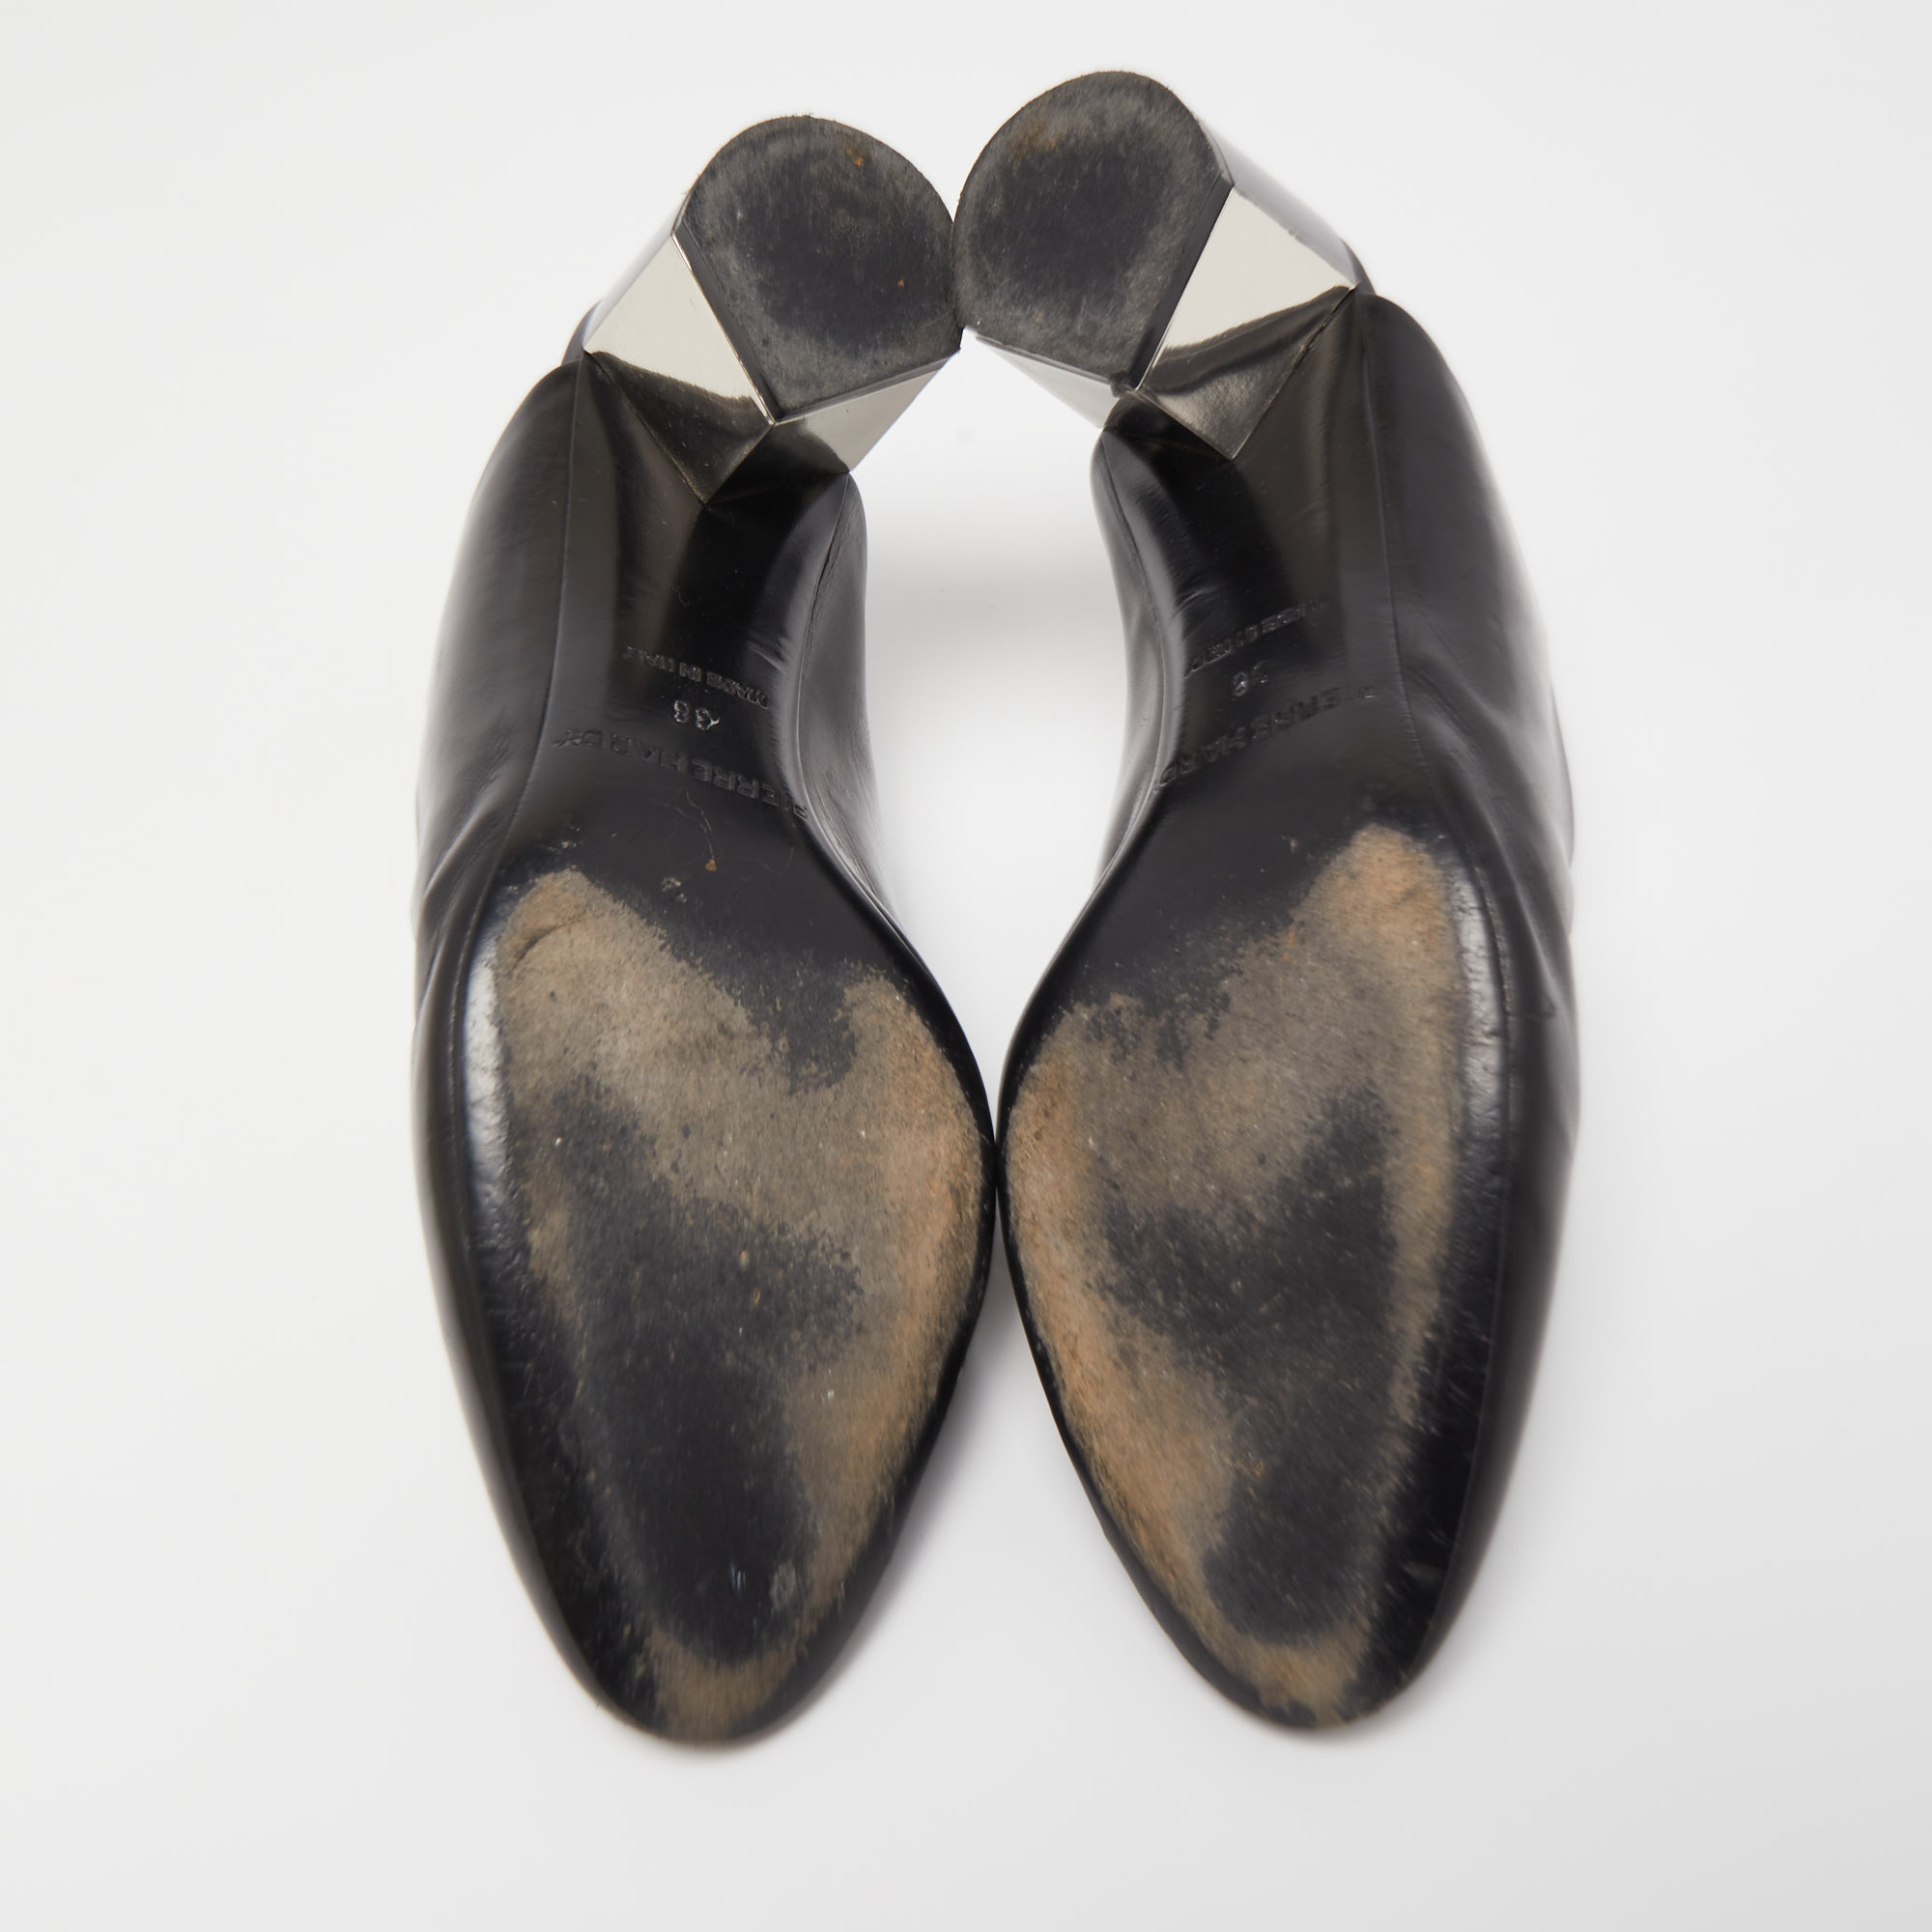 Pierre Hardy Black Leather Block Heel Slide Mules Size 38